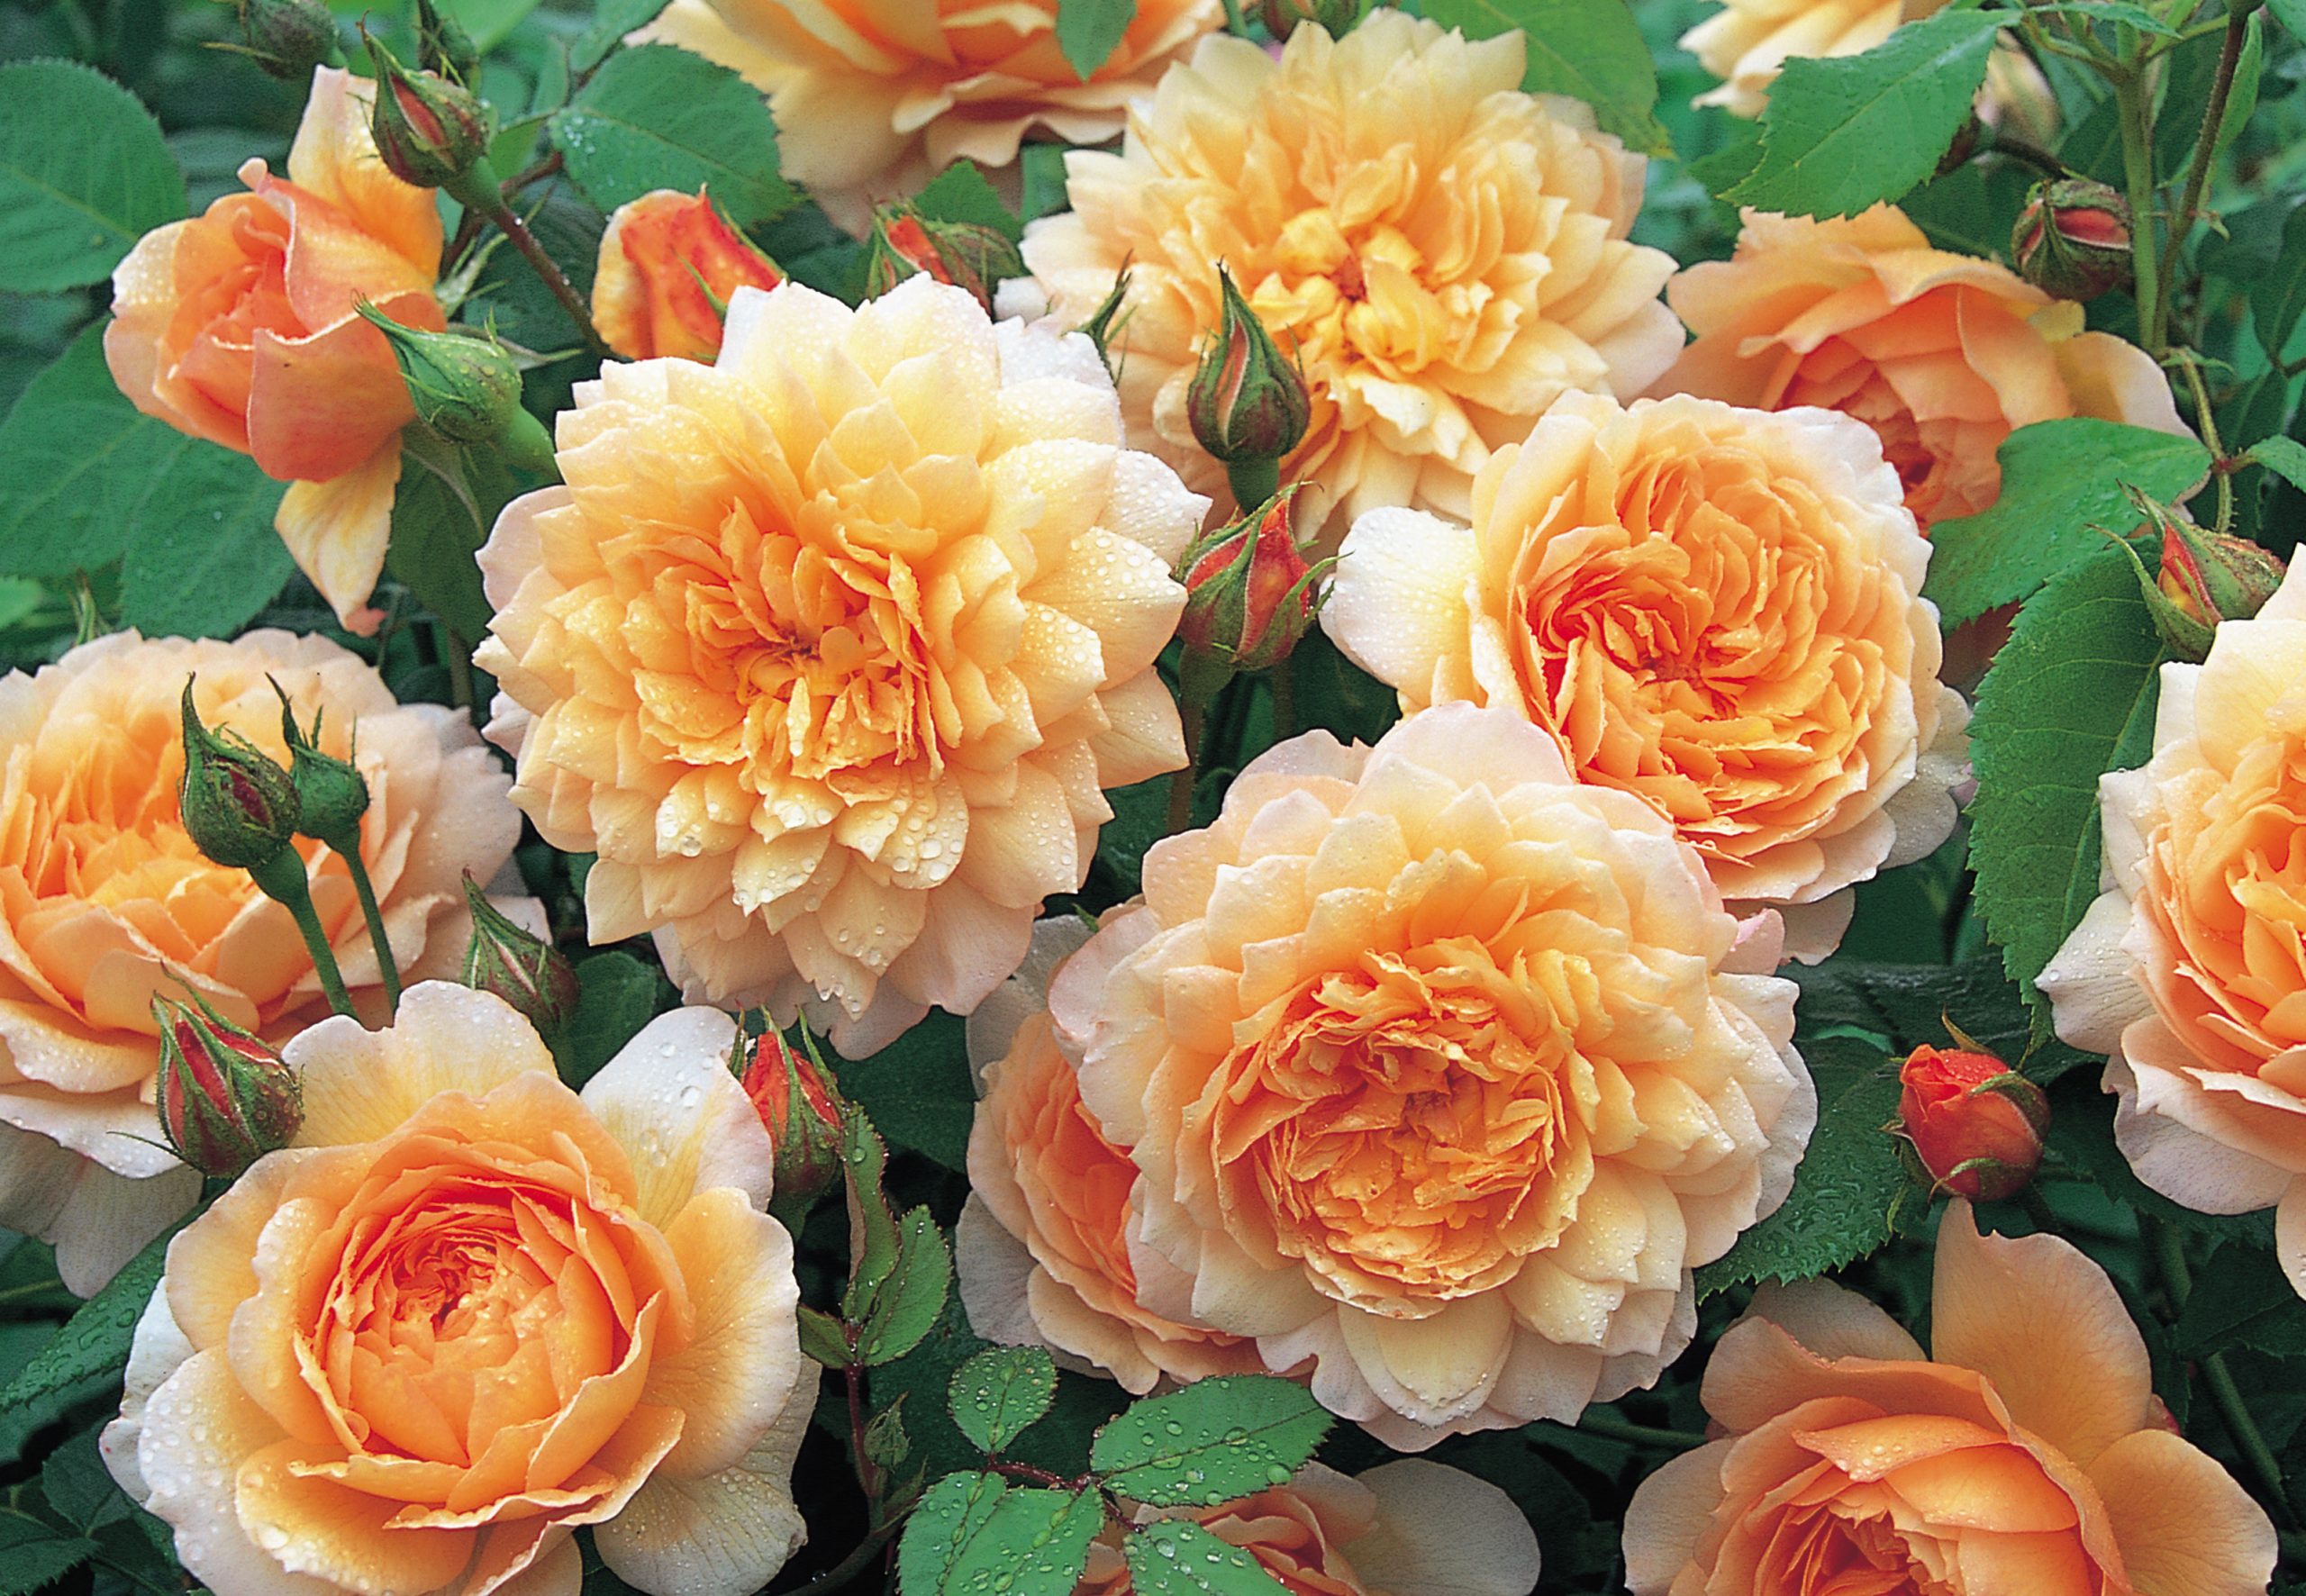 definitive killing Slik Disse 15 engelske roser dufter bedst